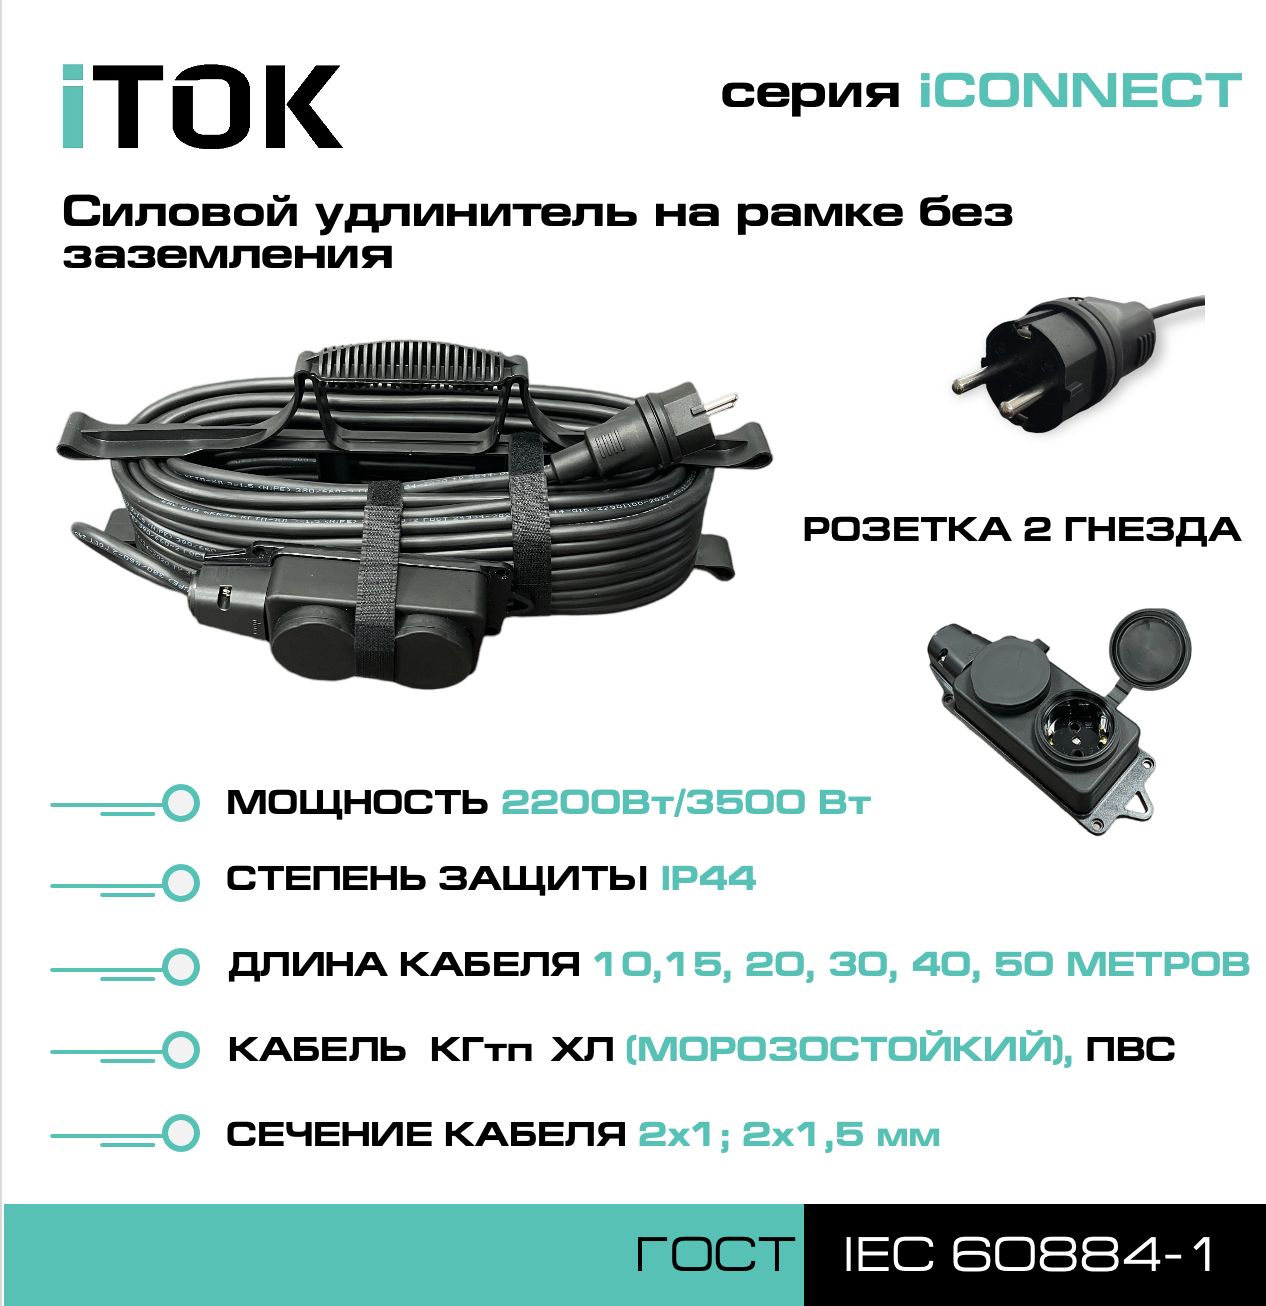 Удлинитель на рамке без земли серии iTOK iCONNECT КГтп-ХЛ 2х1,5 мм 2 гнезда IP44 50 м зарядные гнезда usb в виде клавиши marina 4 8 а more 10264237